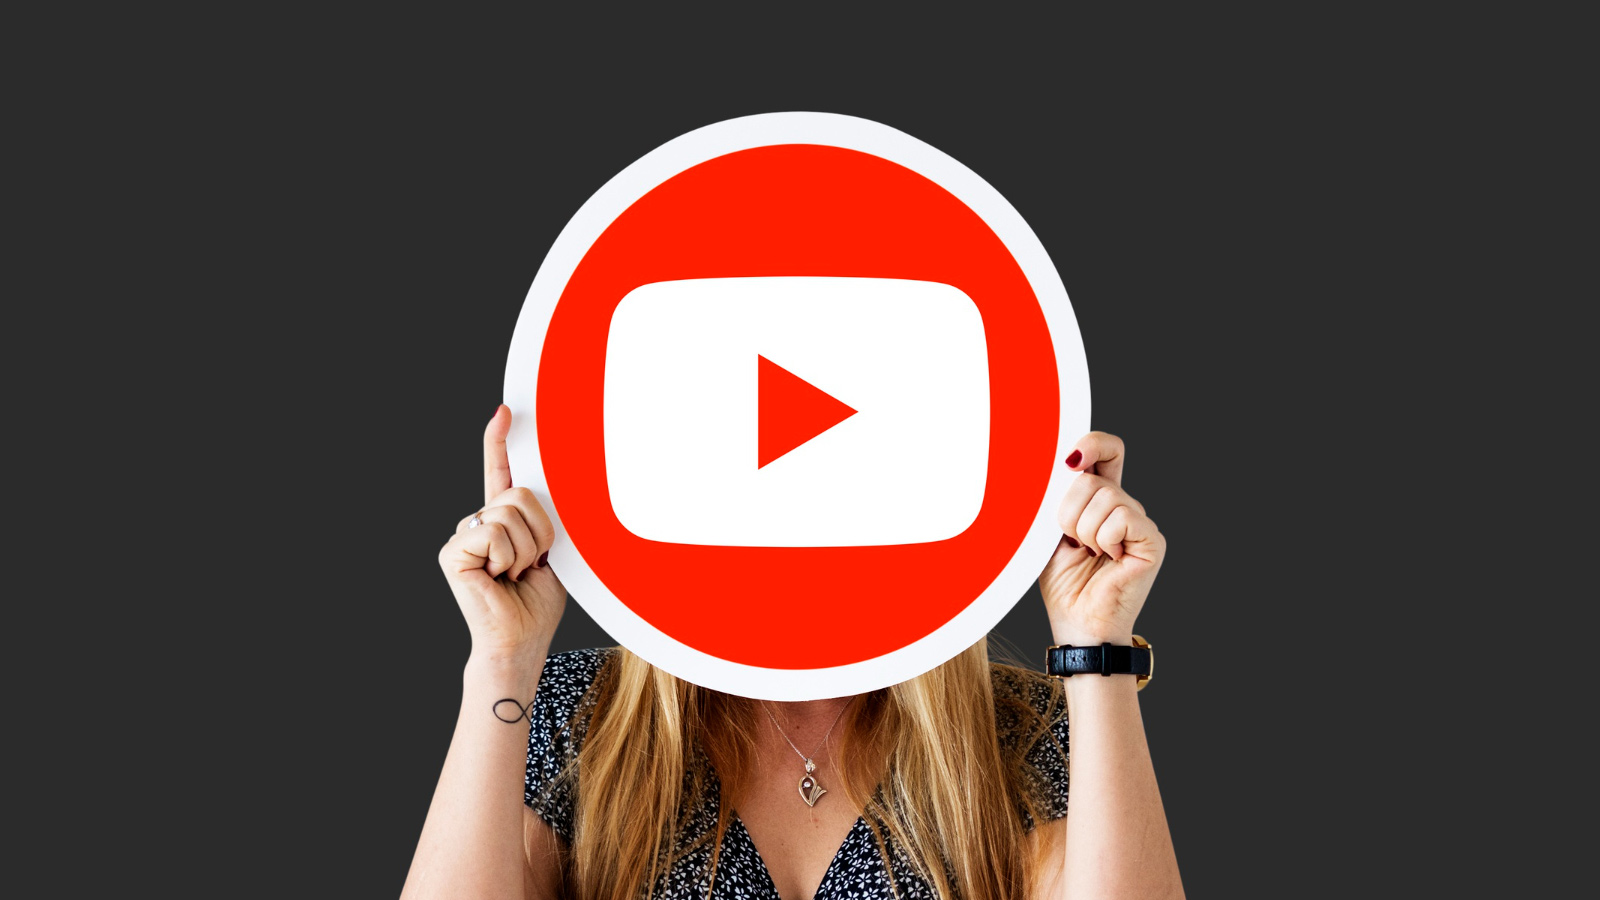 YouTubeШорты, конкурирующие с TikTok, выходят на мировой рынок 1